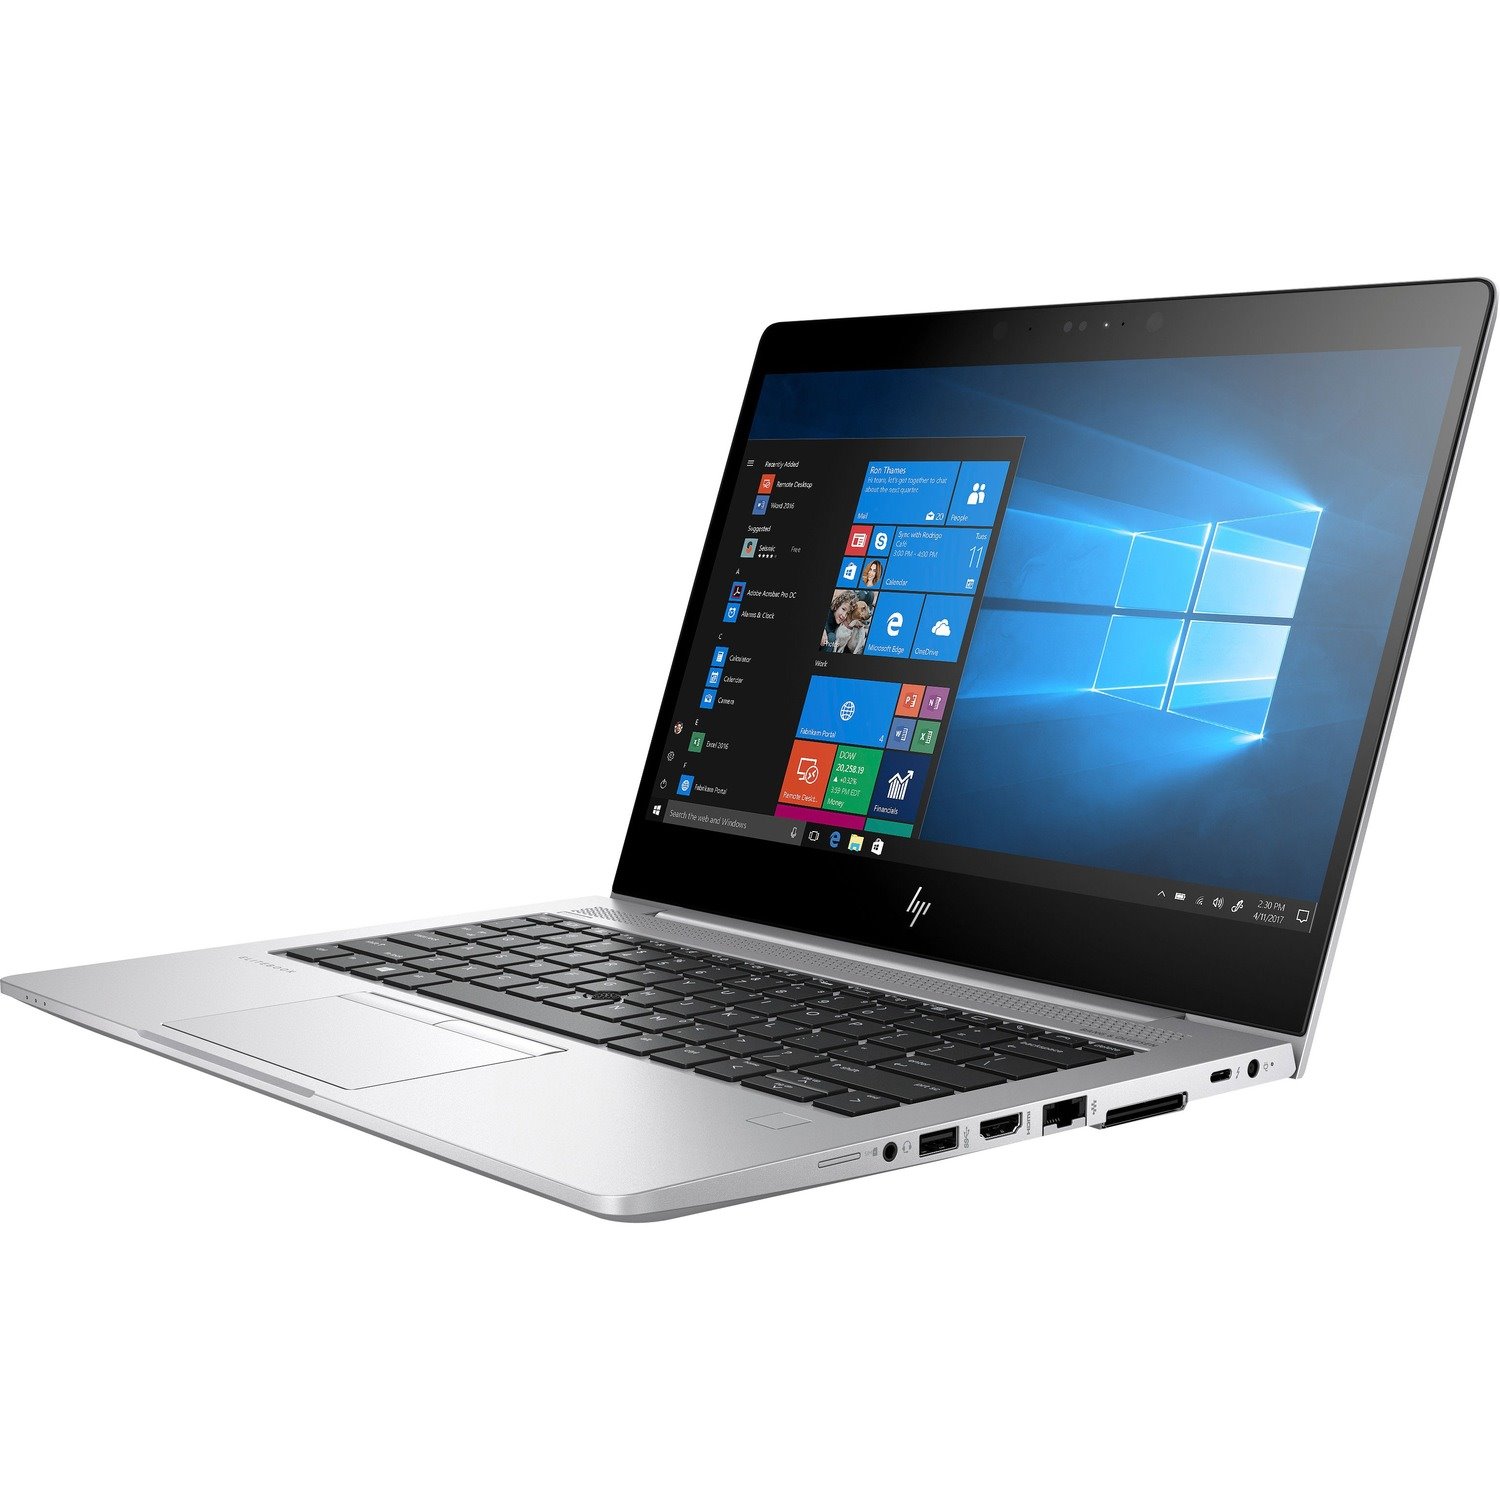 HP EliteBook 830 G5 LTE 33.8 cm (13.3") Notebook - 1920 x 1080 - Intel Core i7 8th Gen i7-8650U Quad-core (4 Core) 1.90 GHz - 8 GB RAM - 256 GB SSD